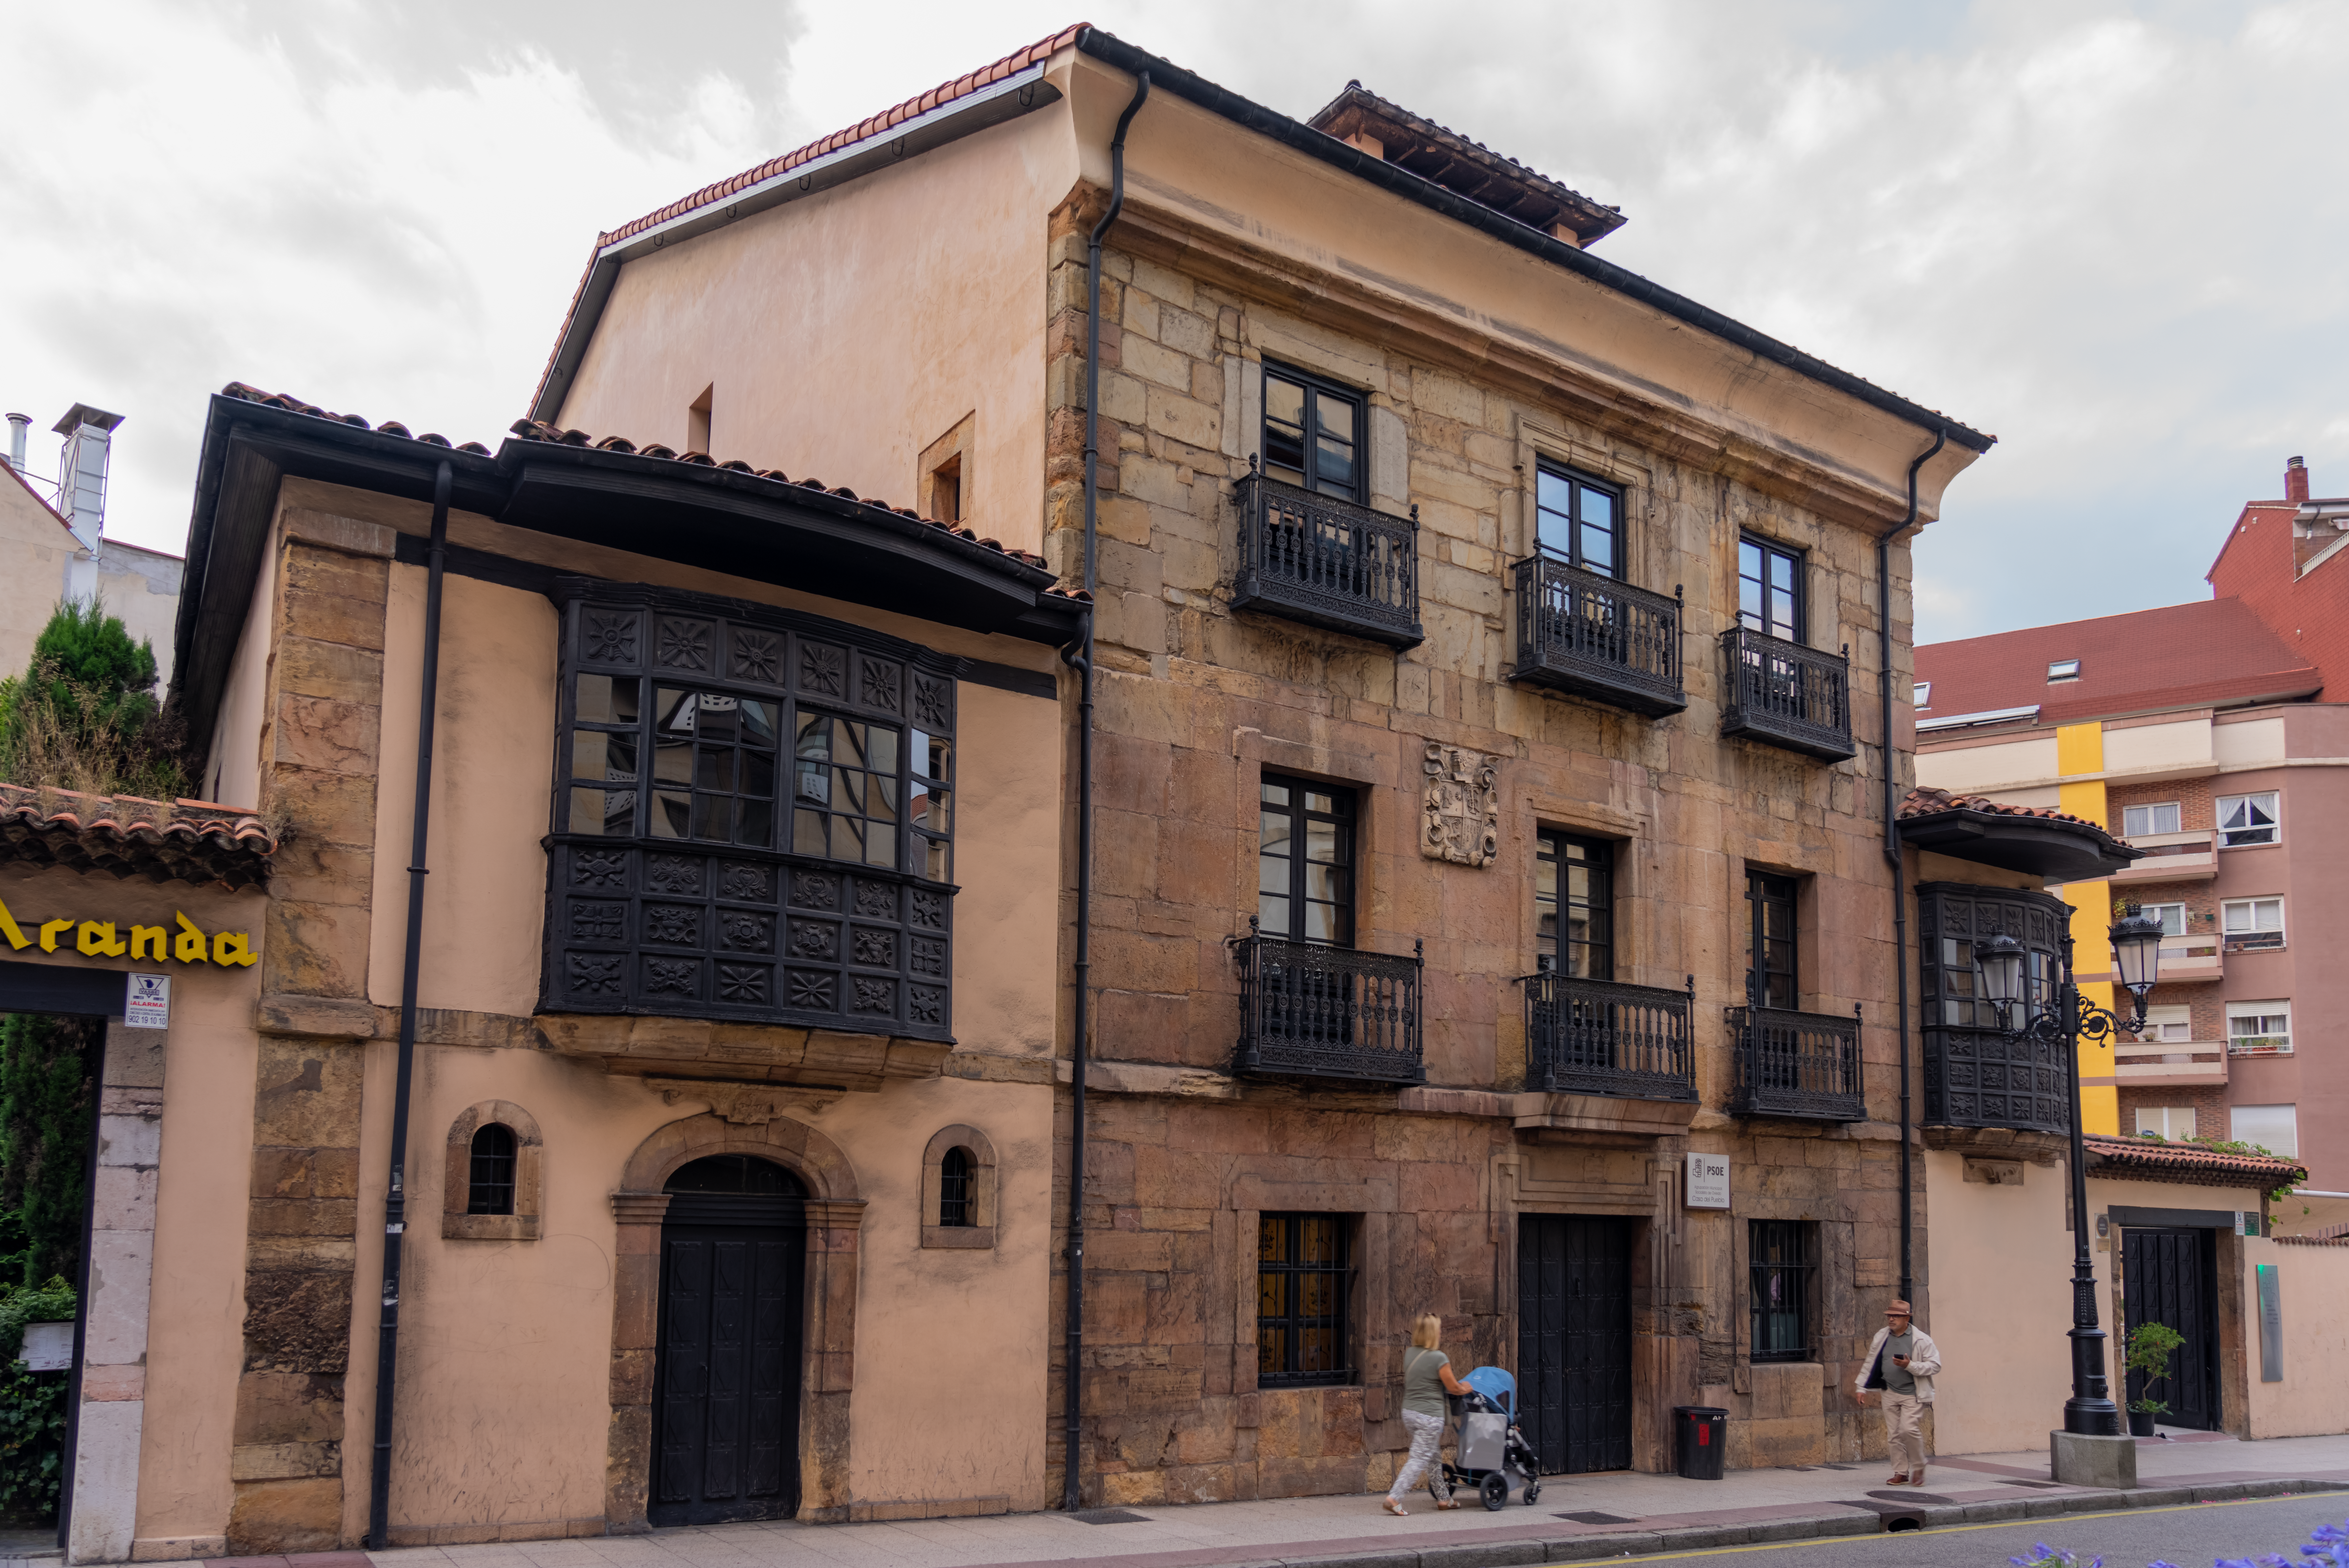 Recomendaciones imperdibles: actividades y lugares que no puedes dejar de visitar en este pintoresco pueblo español